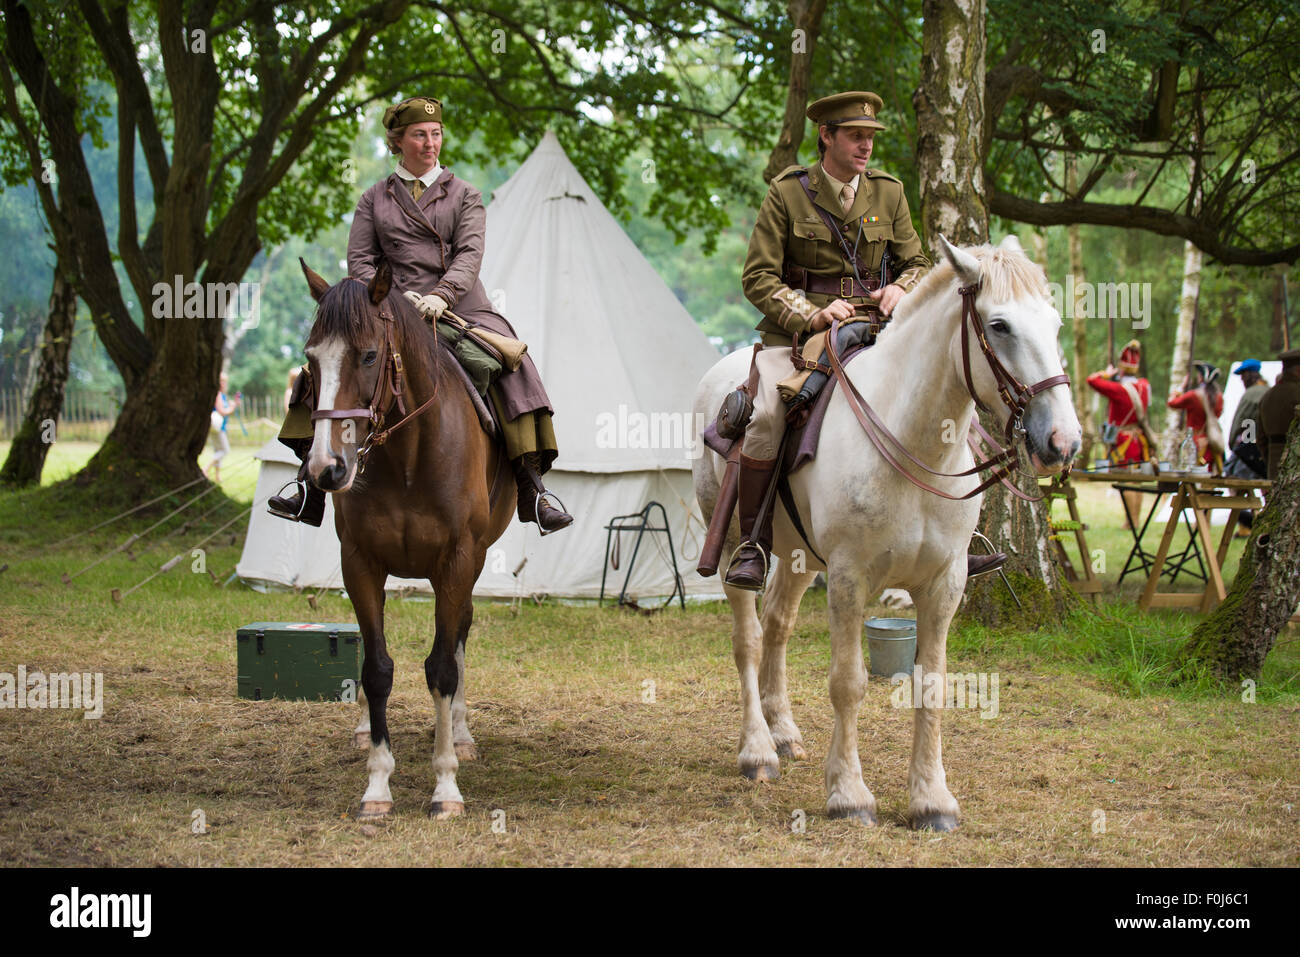 Reconstitution de WW1 soldat et femme medic à cheval la mise sur un affichage à Cannock Chase Visitor Centre UK Banque D'Images